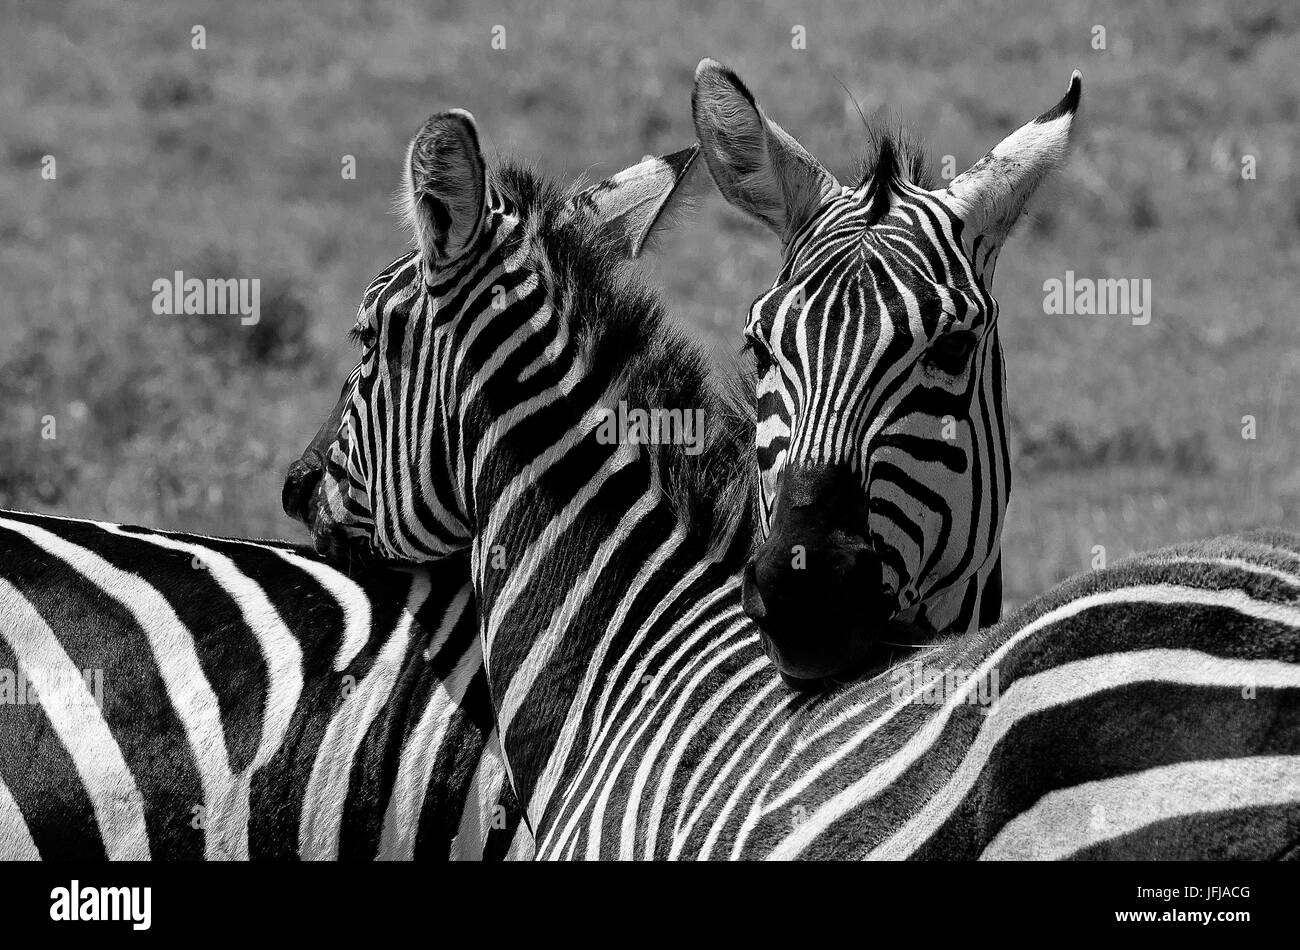 Le parc d'Amboseli, Kenya, Afrique copie de zèbres prise lors d'un moment de tendresse, le parc d'Amboseli Banque D'Images